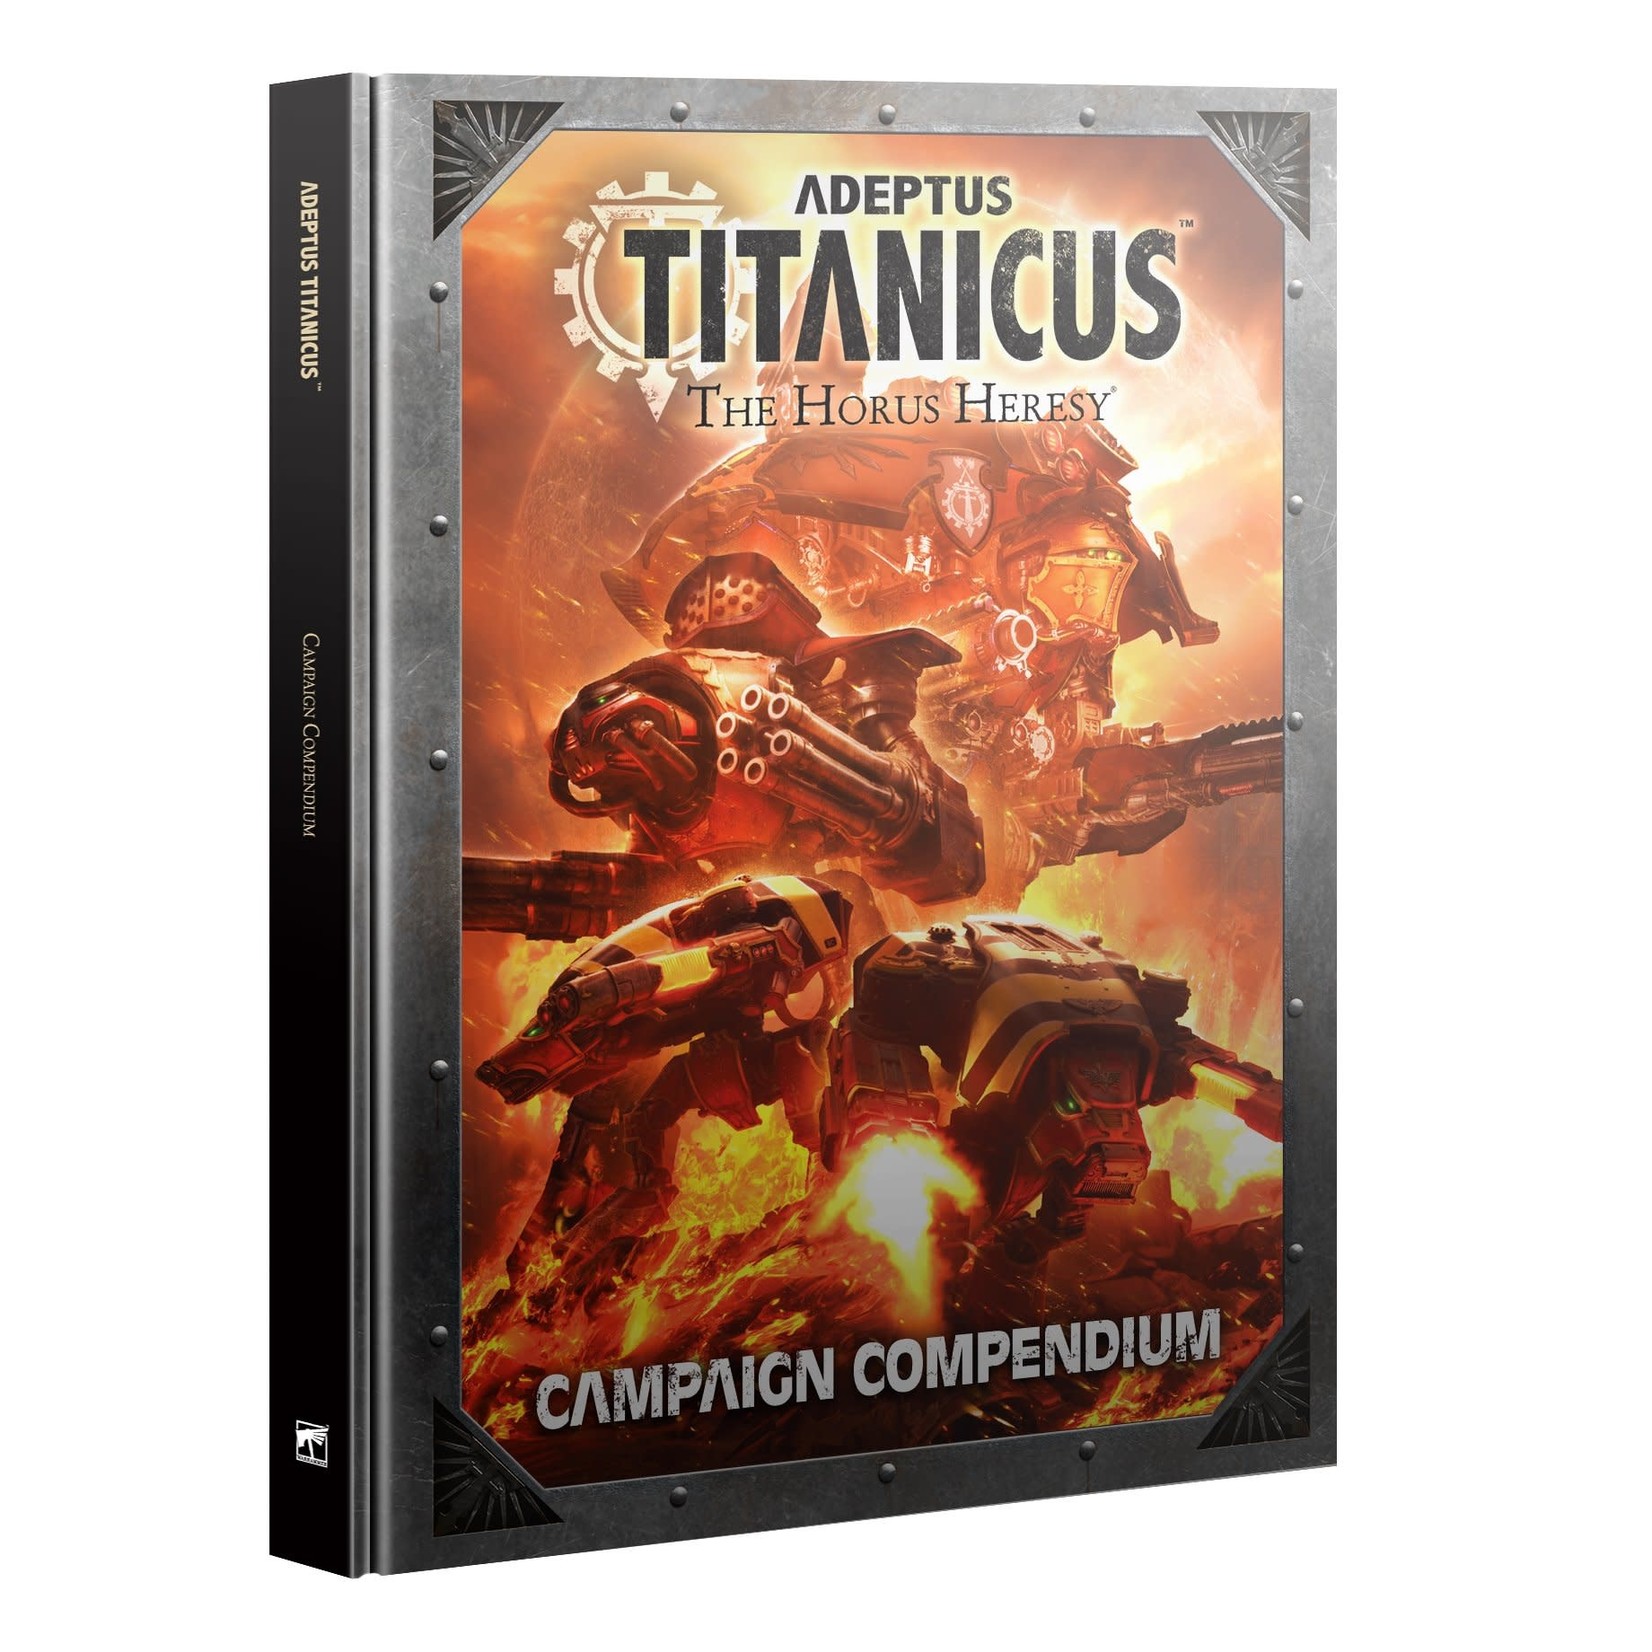 Games Workshop Adeptus Titanicus Campaign Compendium